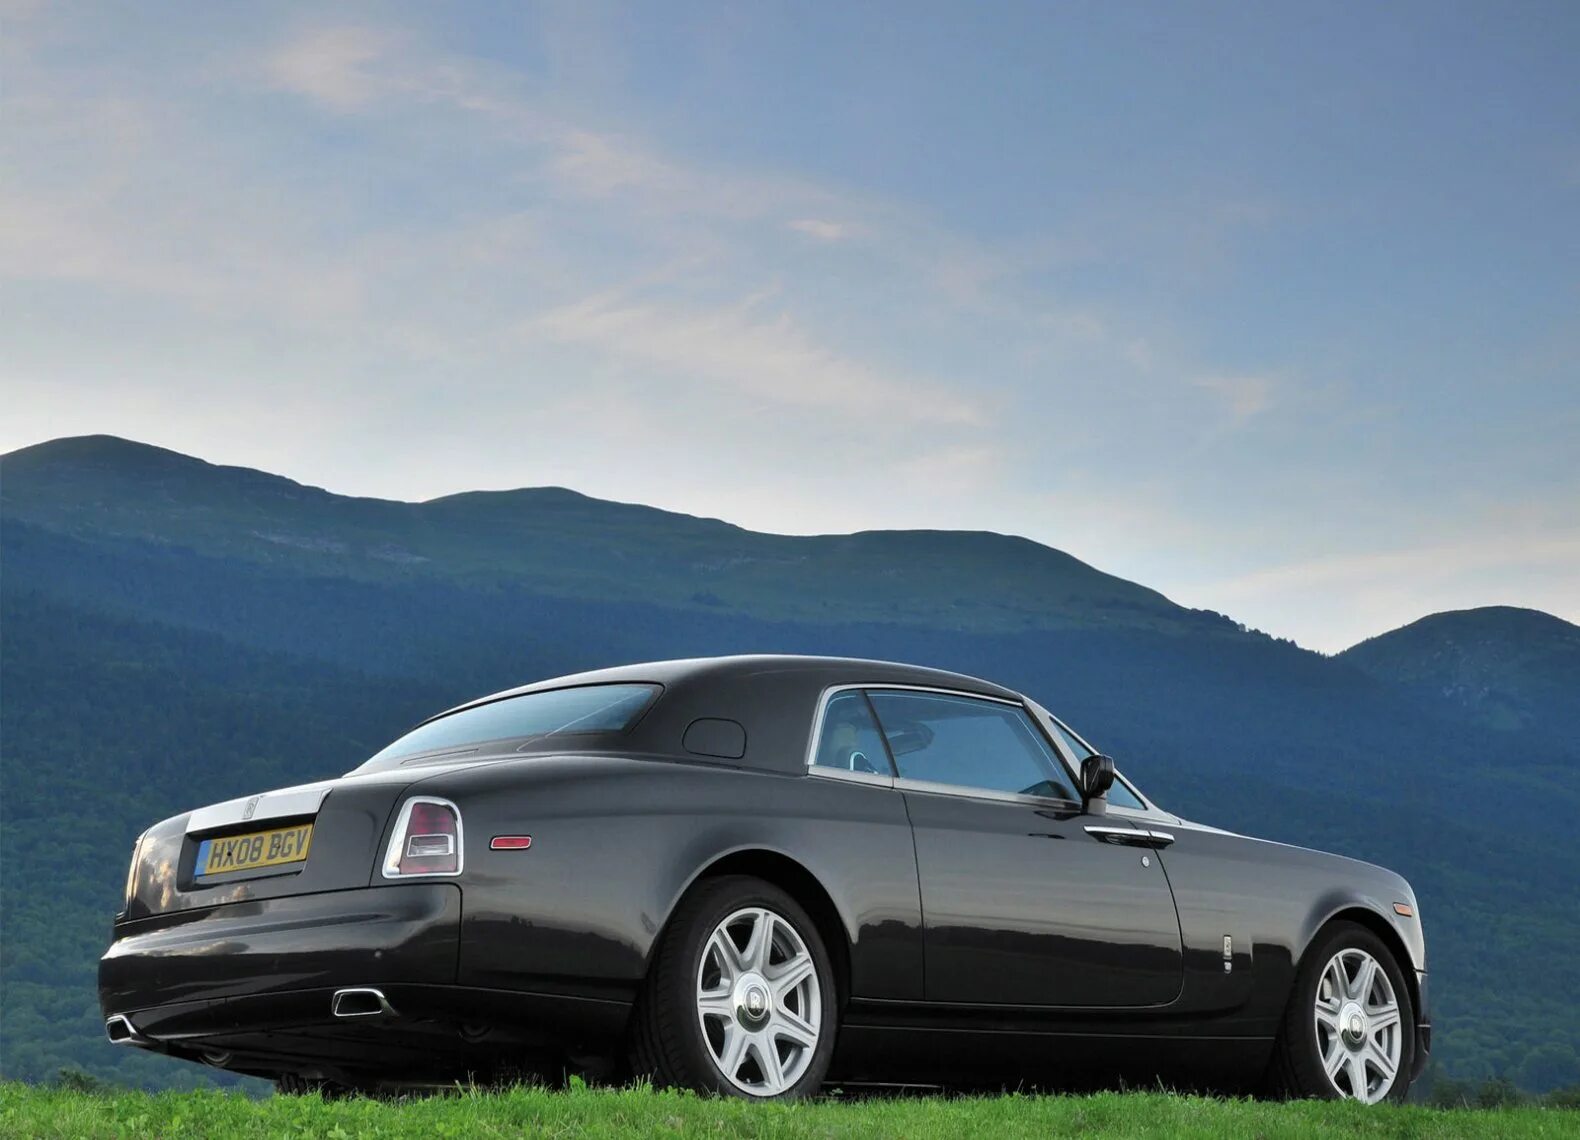 Роллс купе. Rolls Royce Phantom Coupe 2009. Rolls Royce Phantom Coupe. Rolls Royce Phantom купе. Rolls Royce 2009 купе.